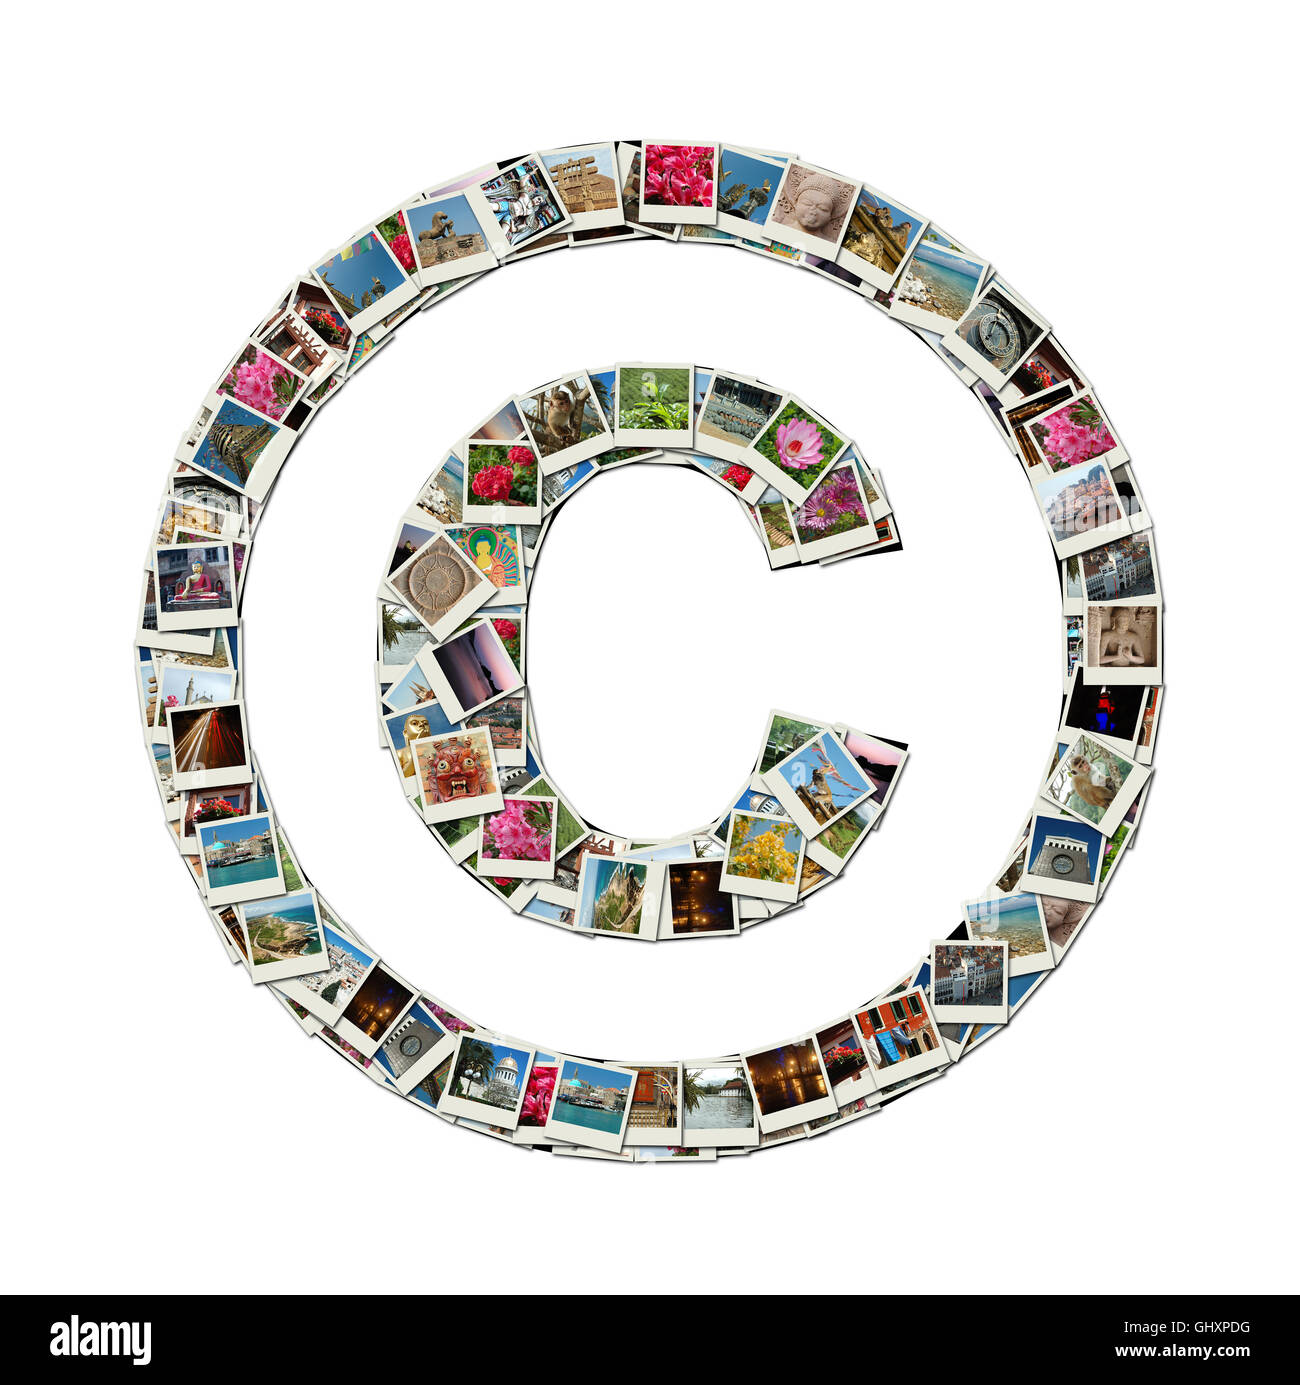 Simbolo di copyright © - illustrazione concettuale realizzato come collage di foto di viaggio Foto Stock